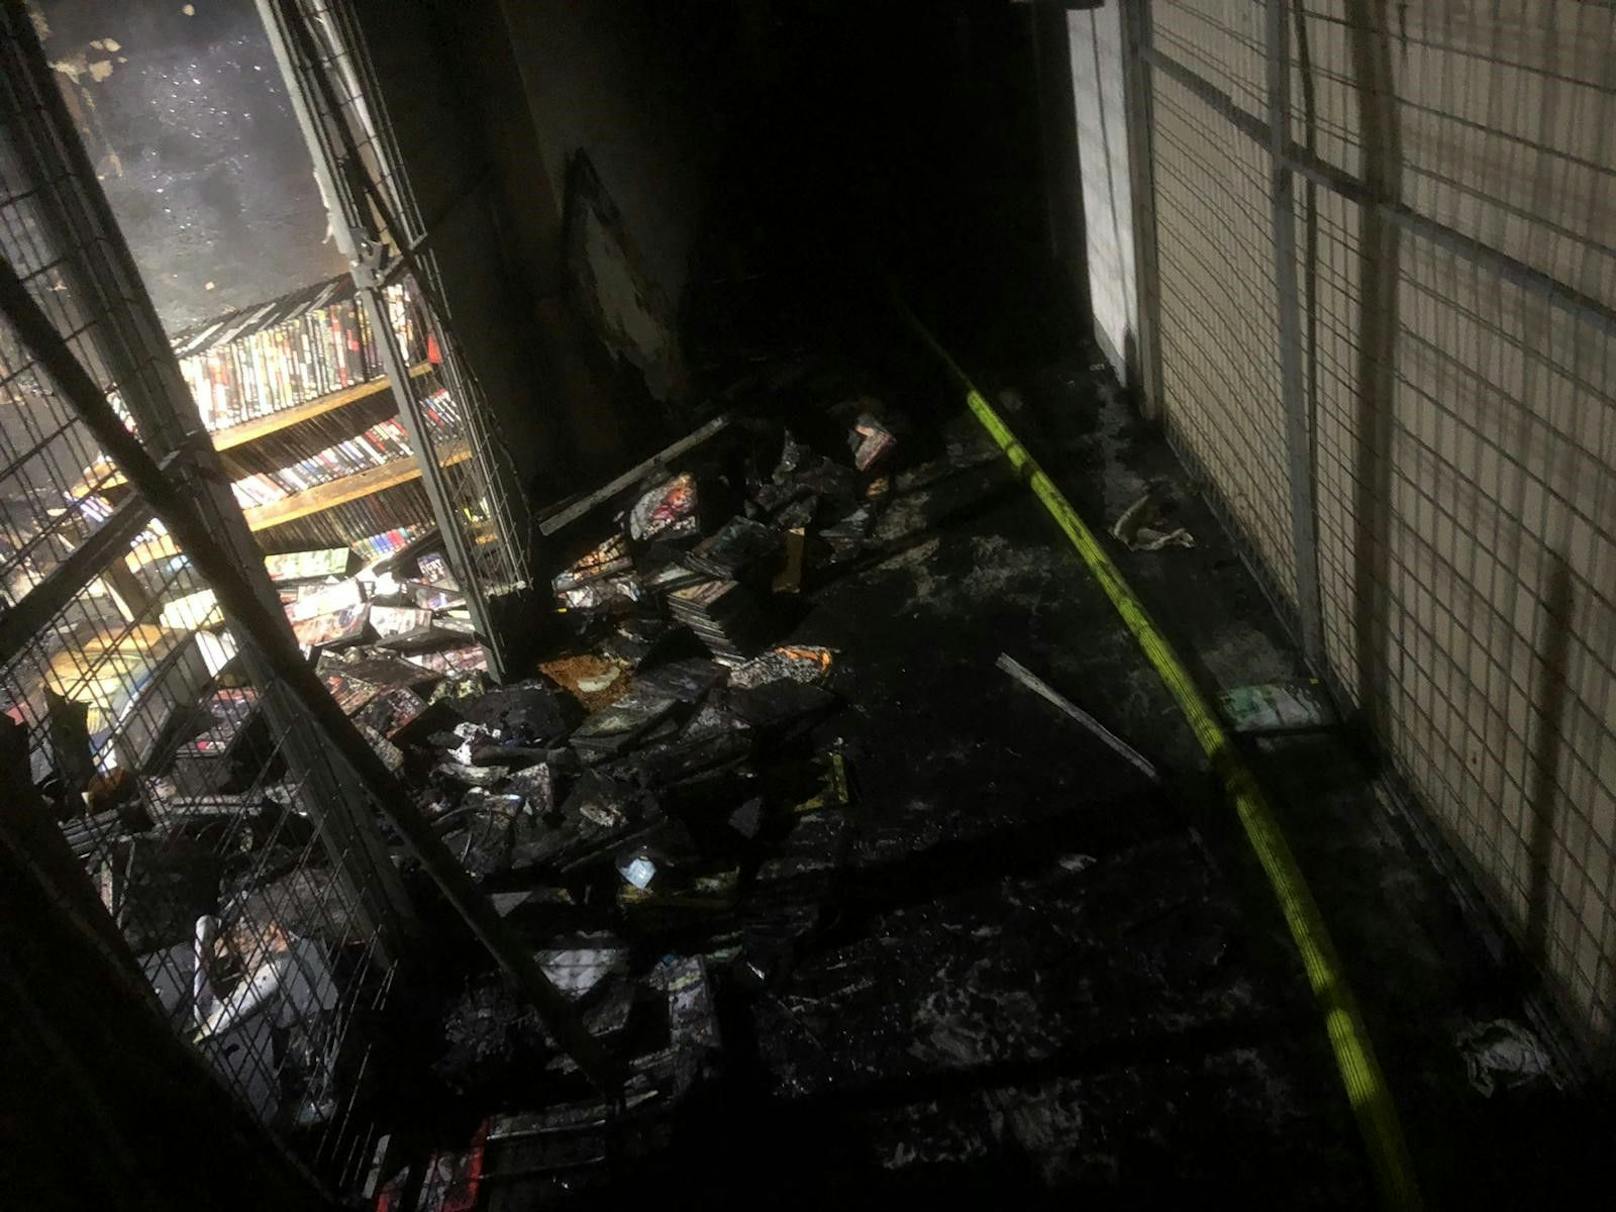 Brand in Keller von Wohnhausanlage